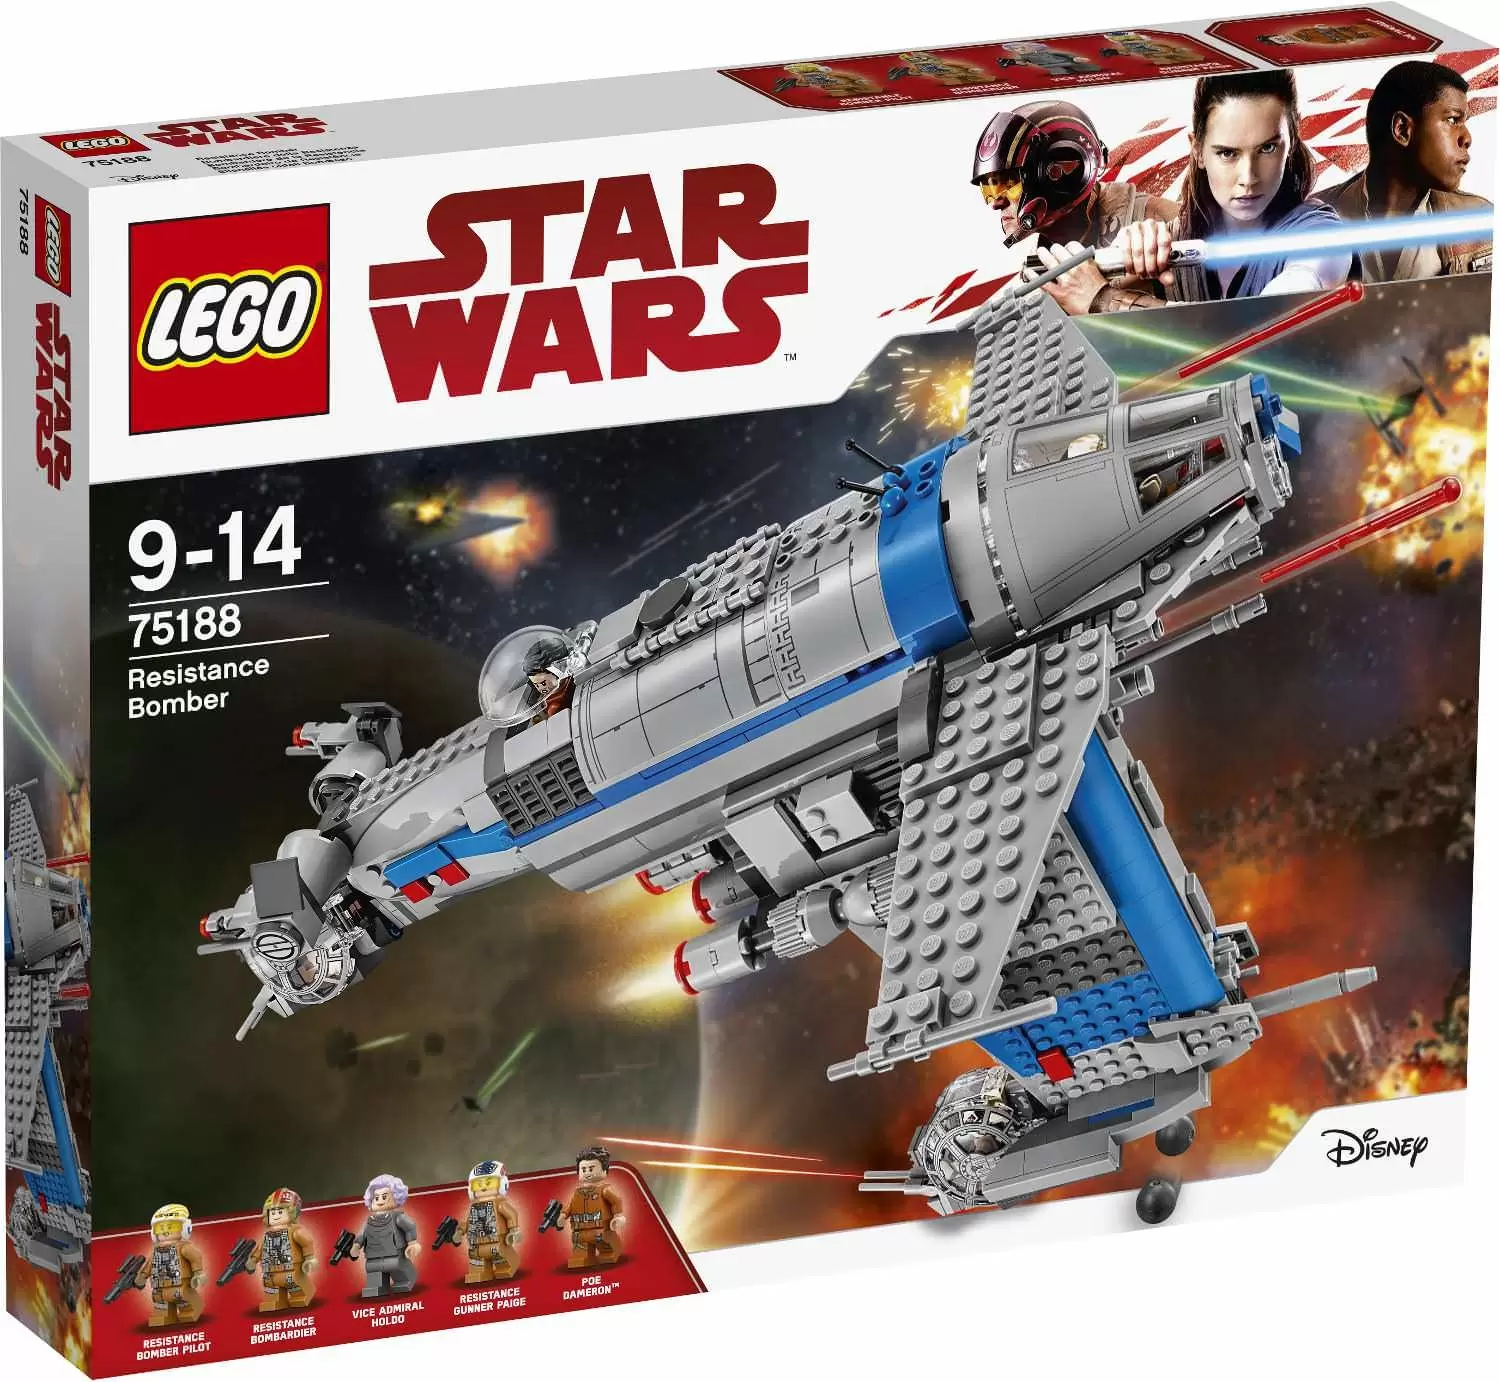 LEGO Star Wars - Resistance Bomber